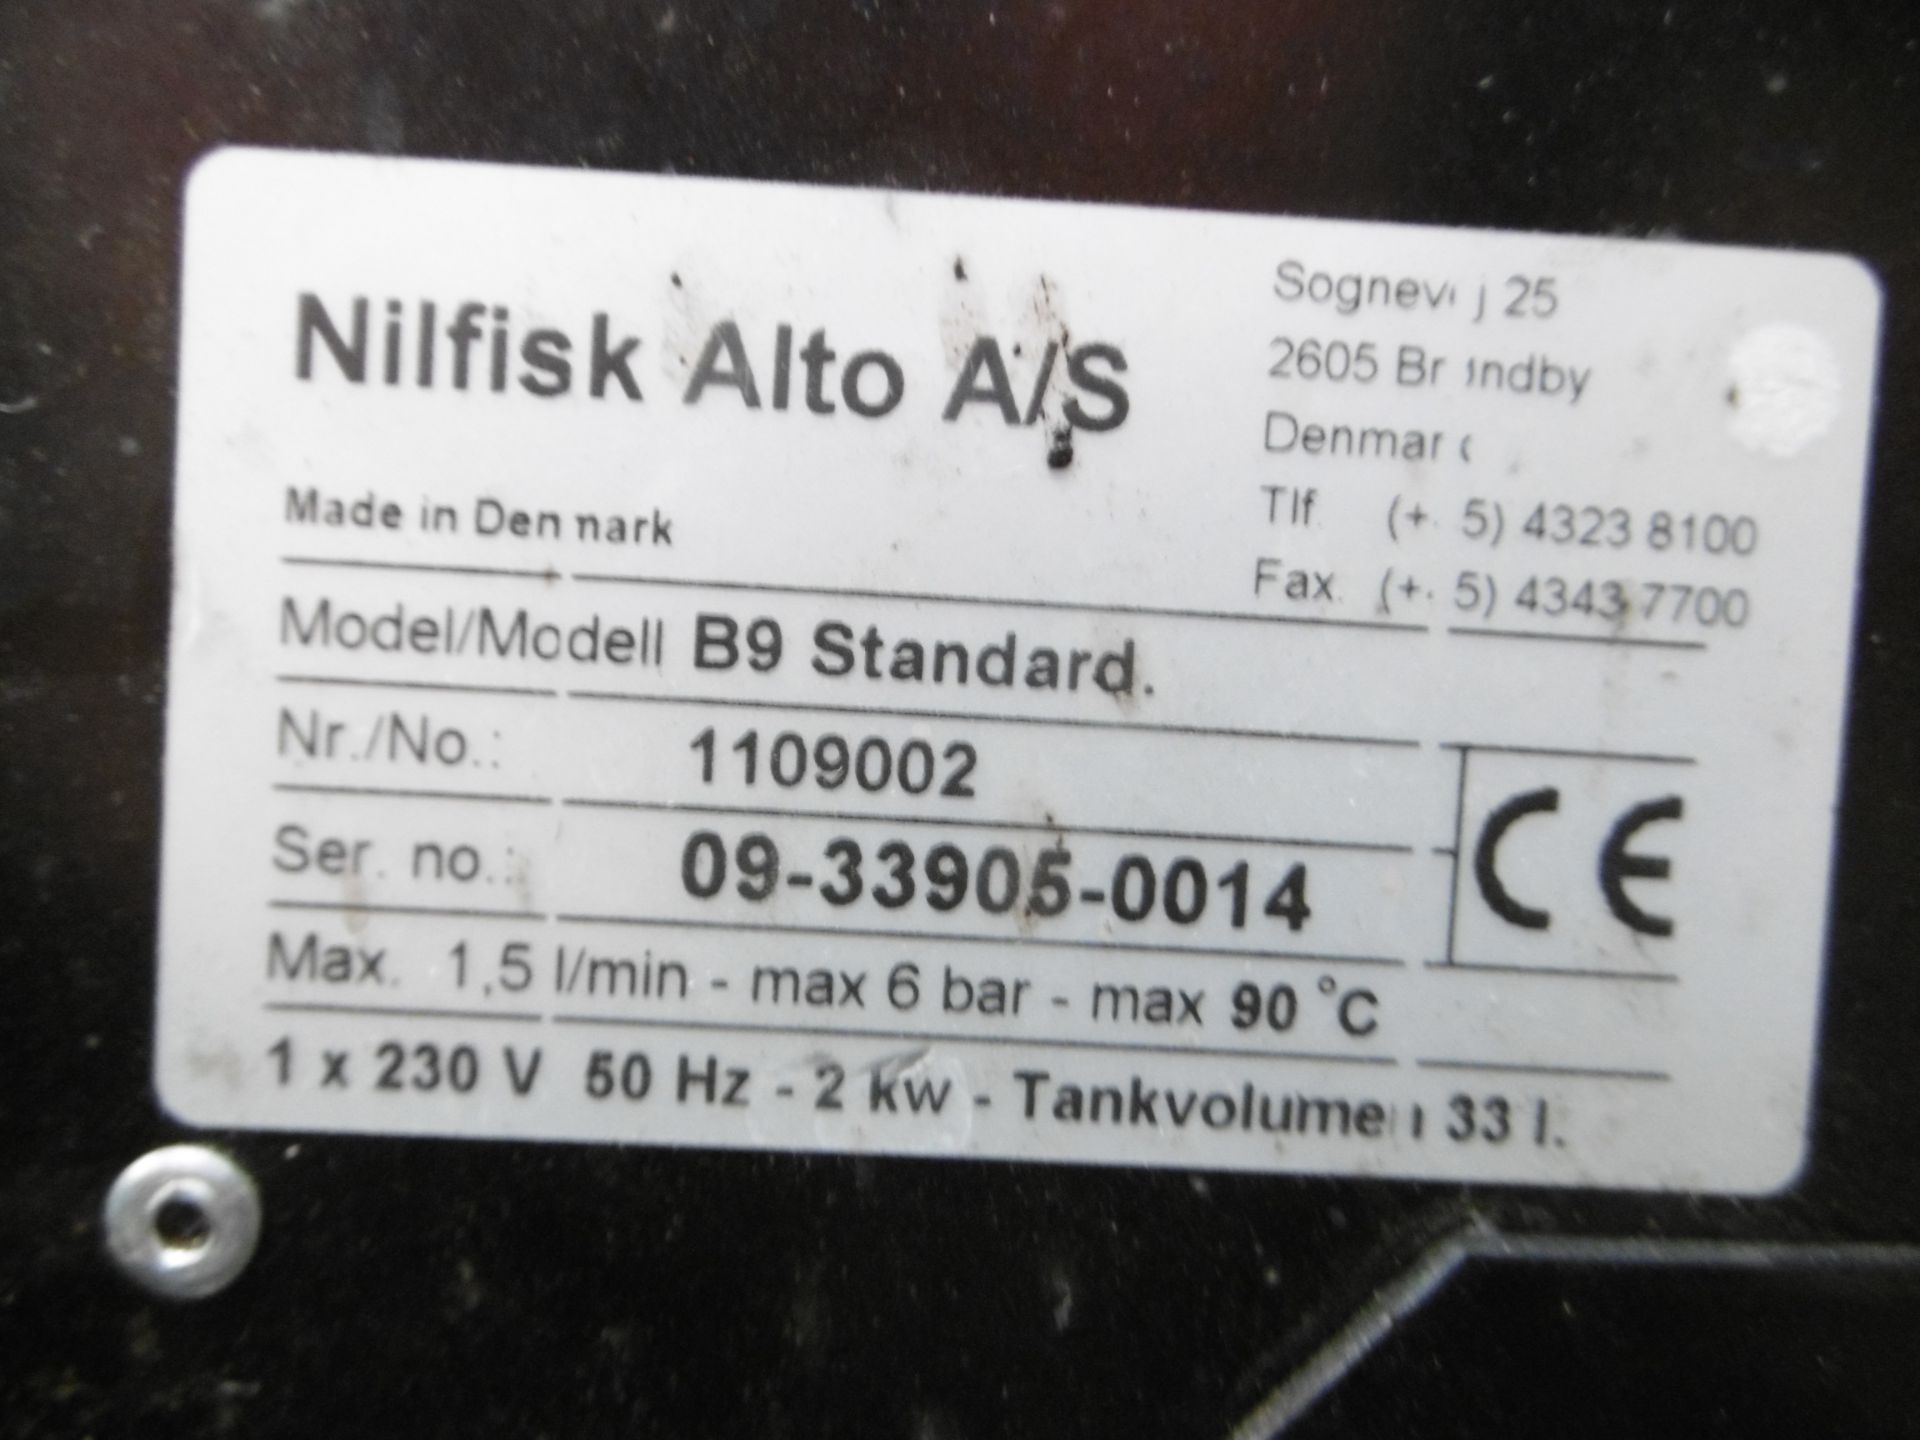 Nilfisk Alto B9 Standard Parts Washer - Bild 8 aus 8